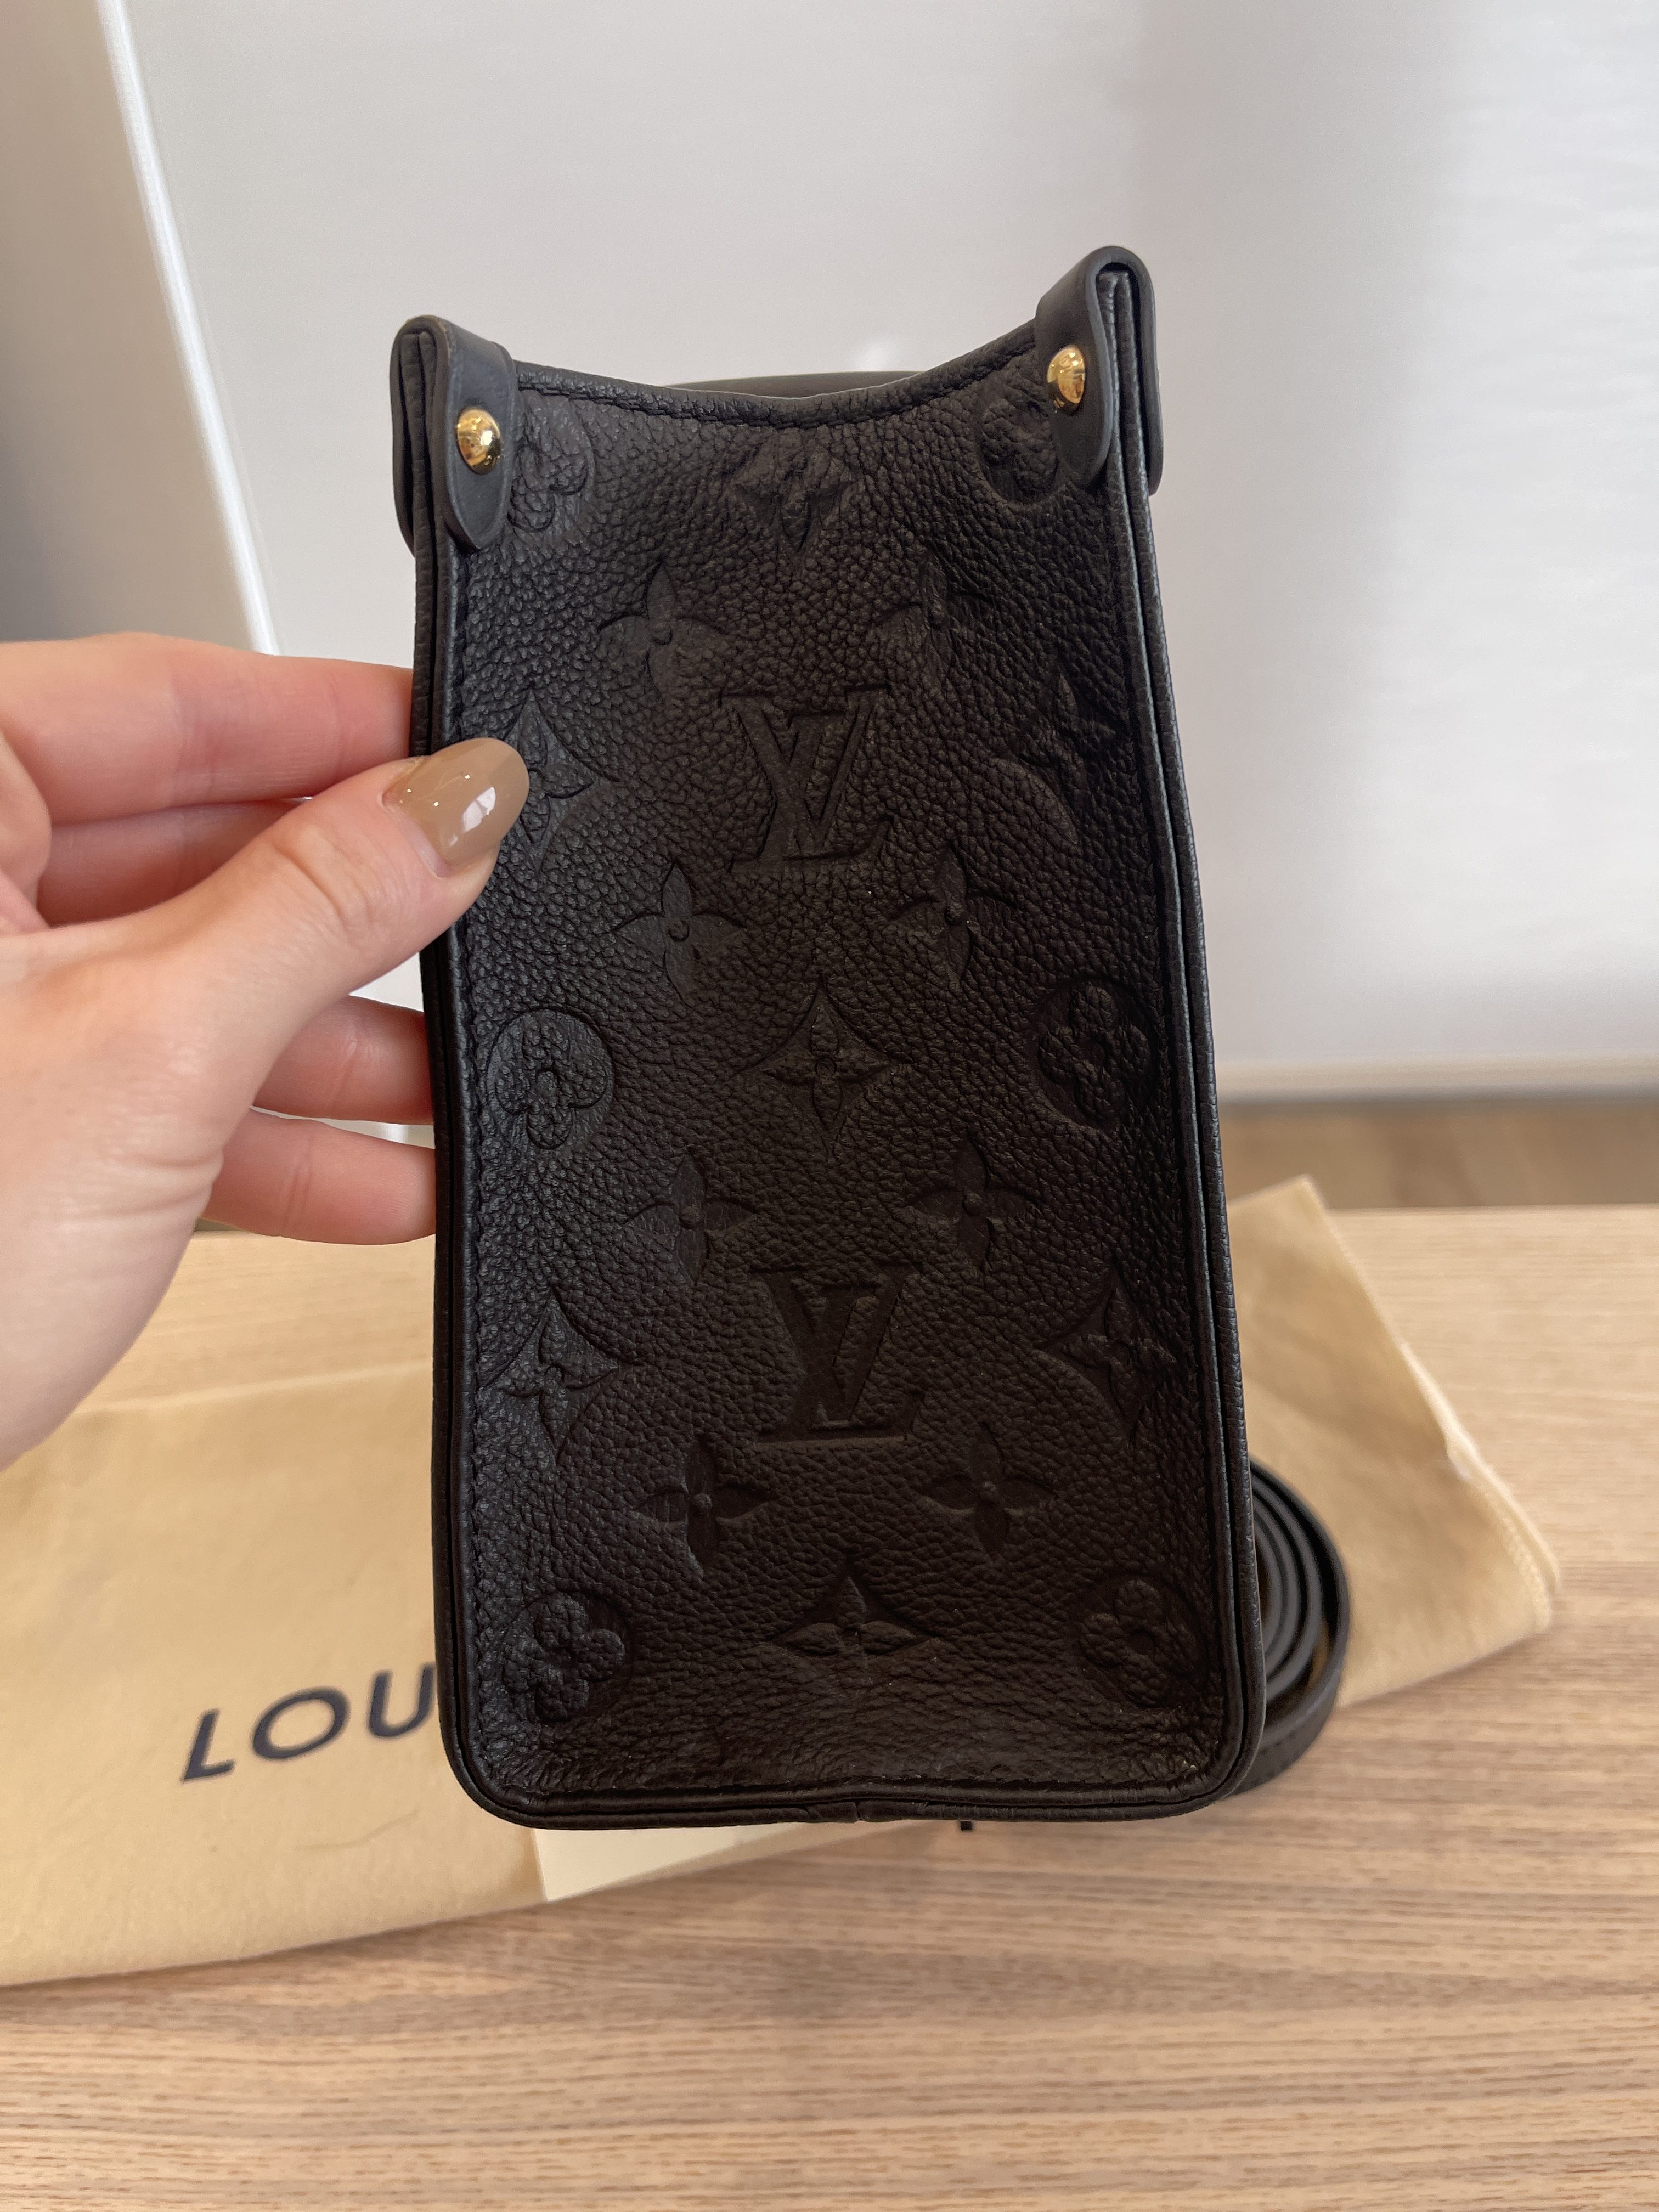 Louis Vuitton Black Giant Monogram Empreinte Leather Onthego PM, myGemma